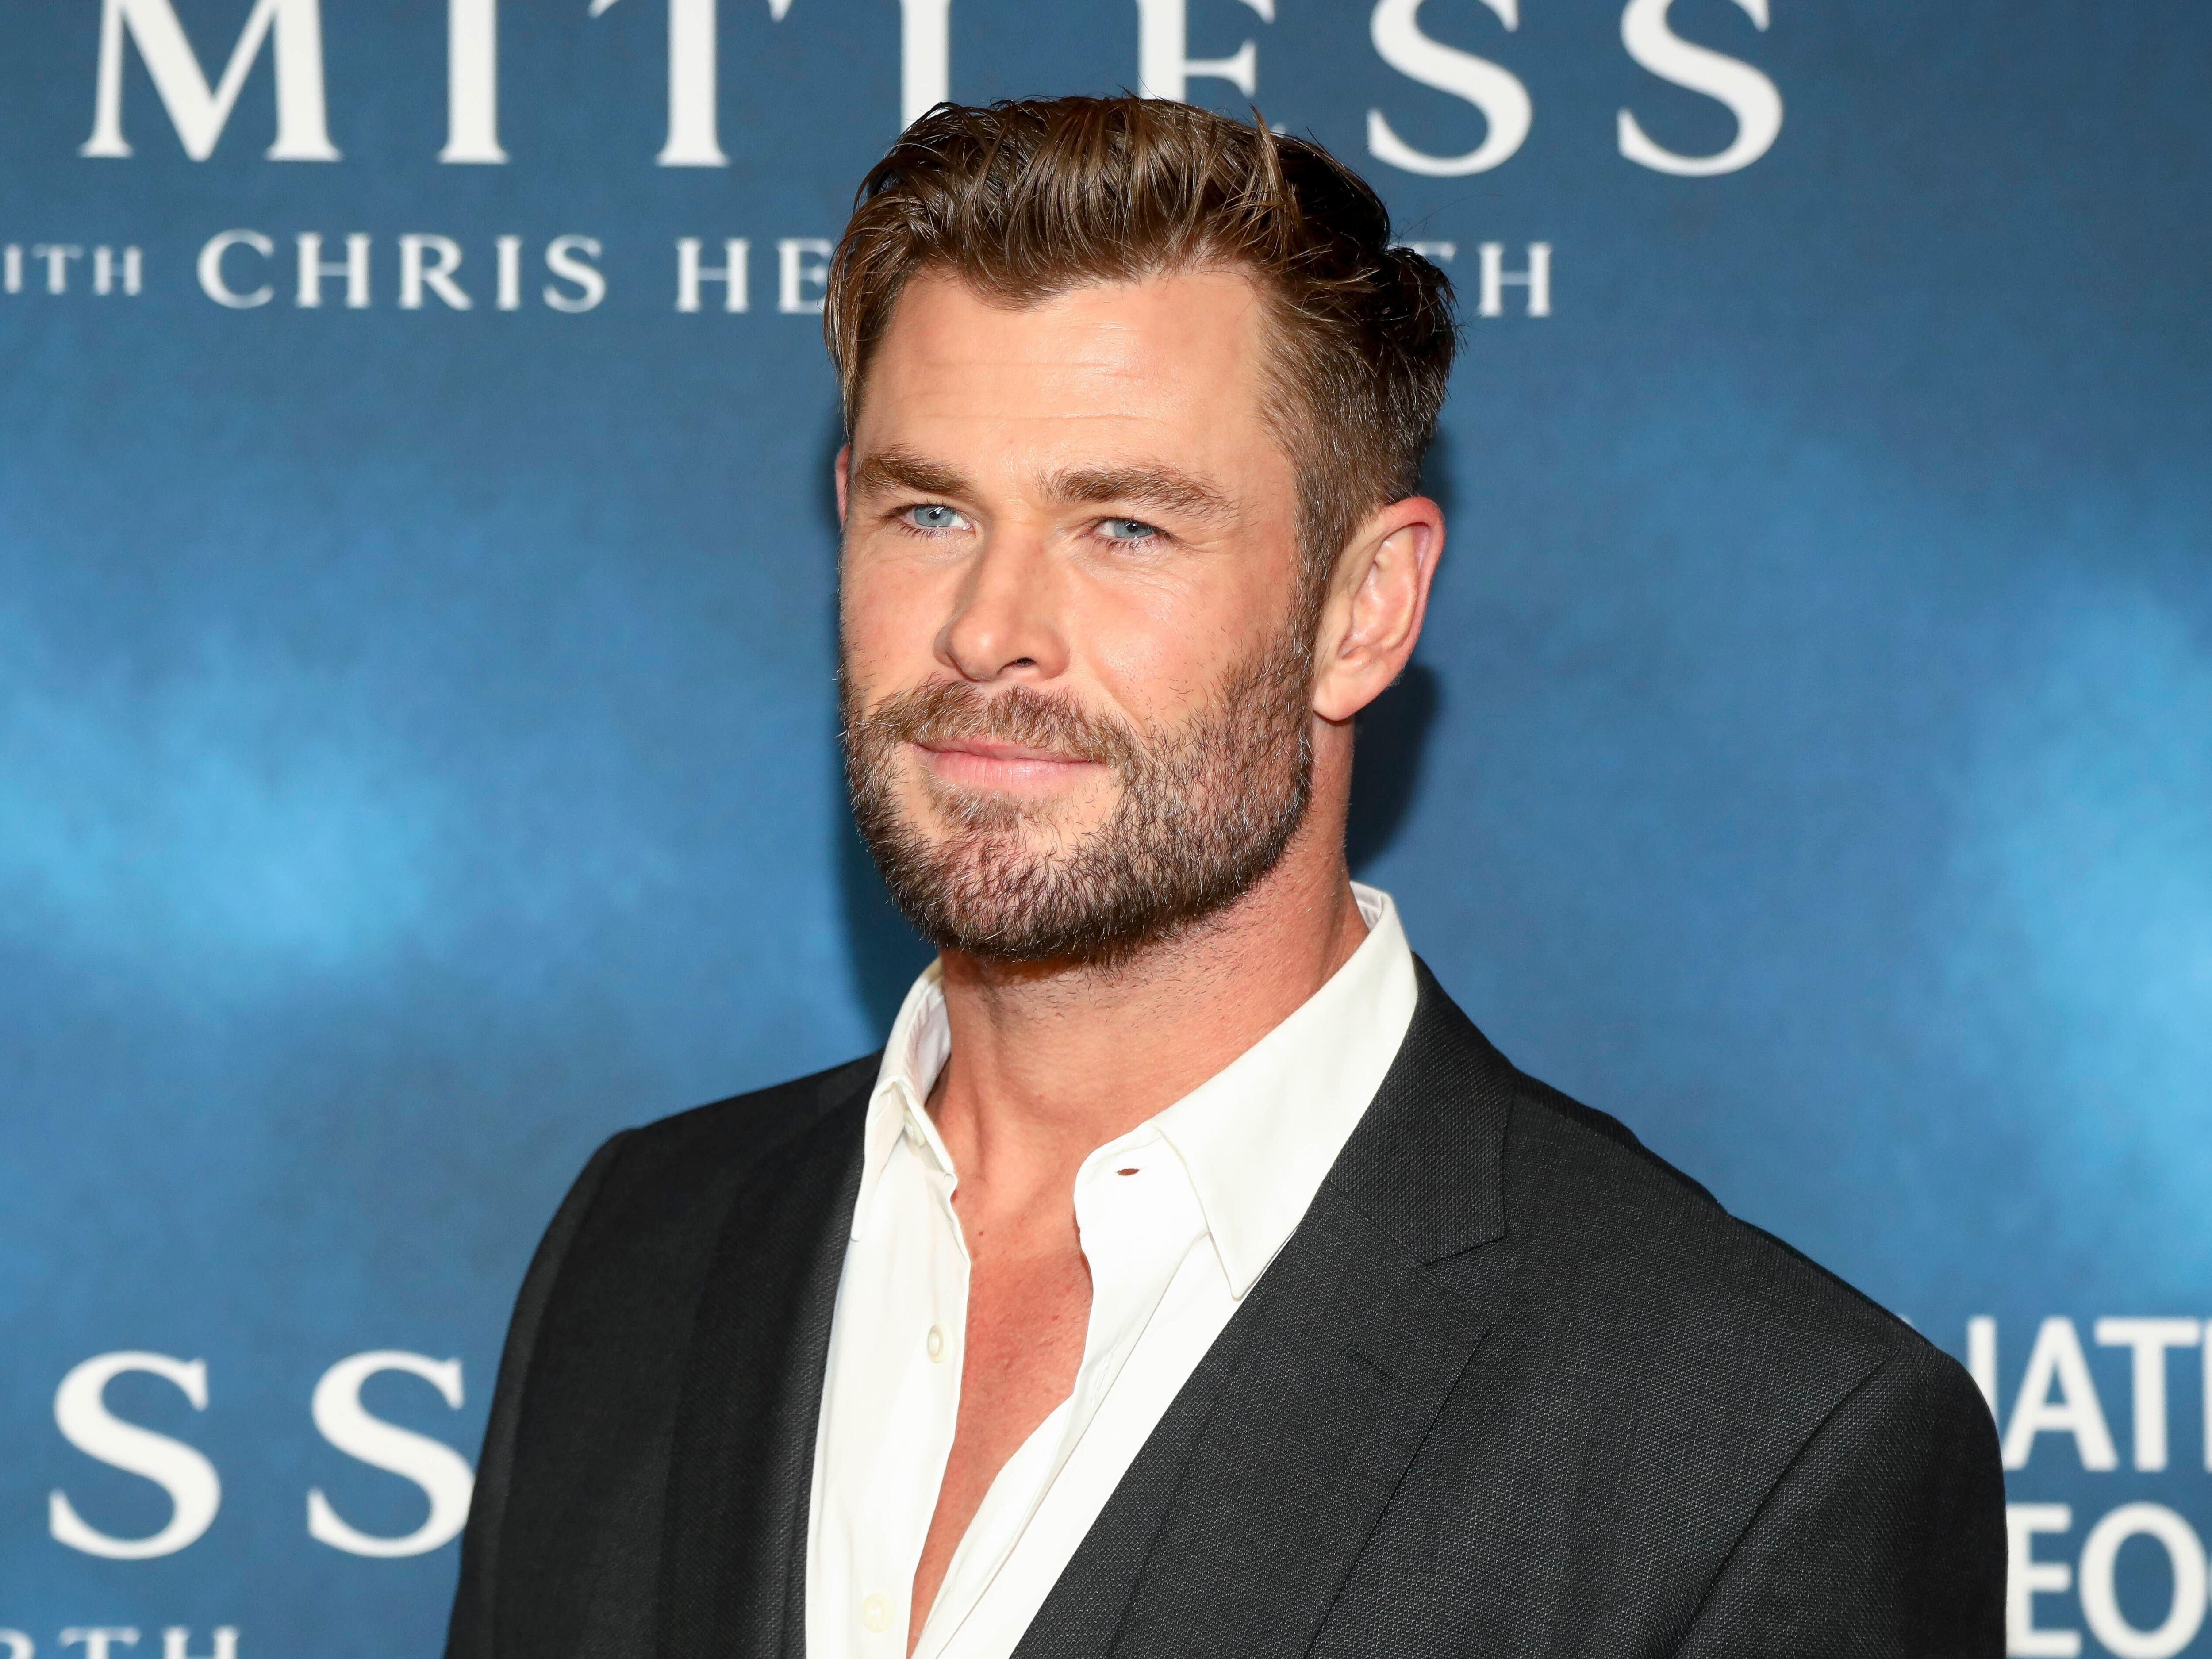 Chris Hemsworth vai dar um tempo na carreira após descobrir predispoição  para Alzheimer (mais info nos comentários) : r/jovemnerd